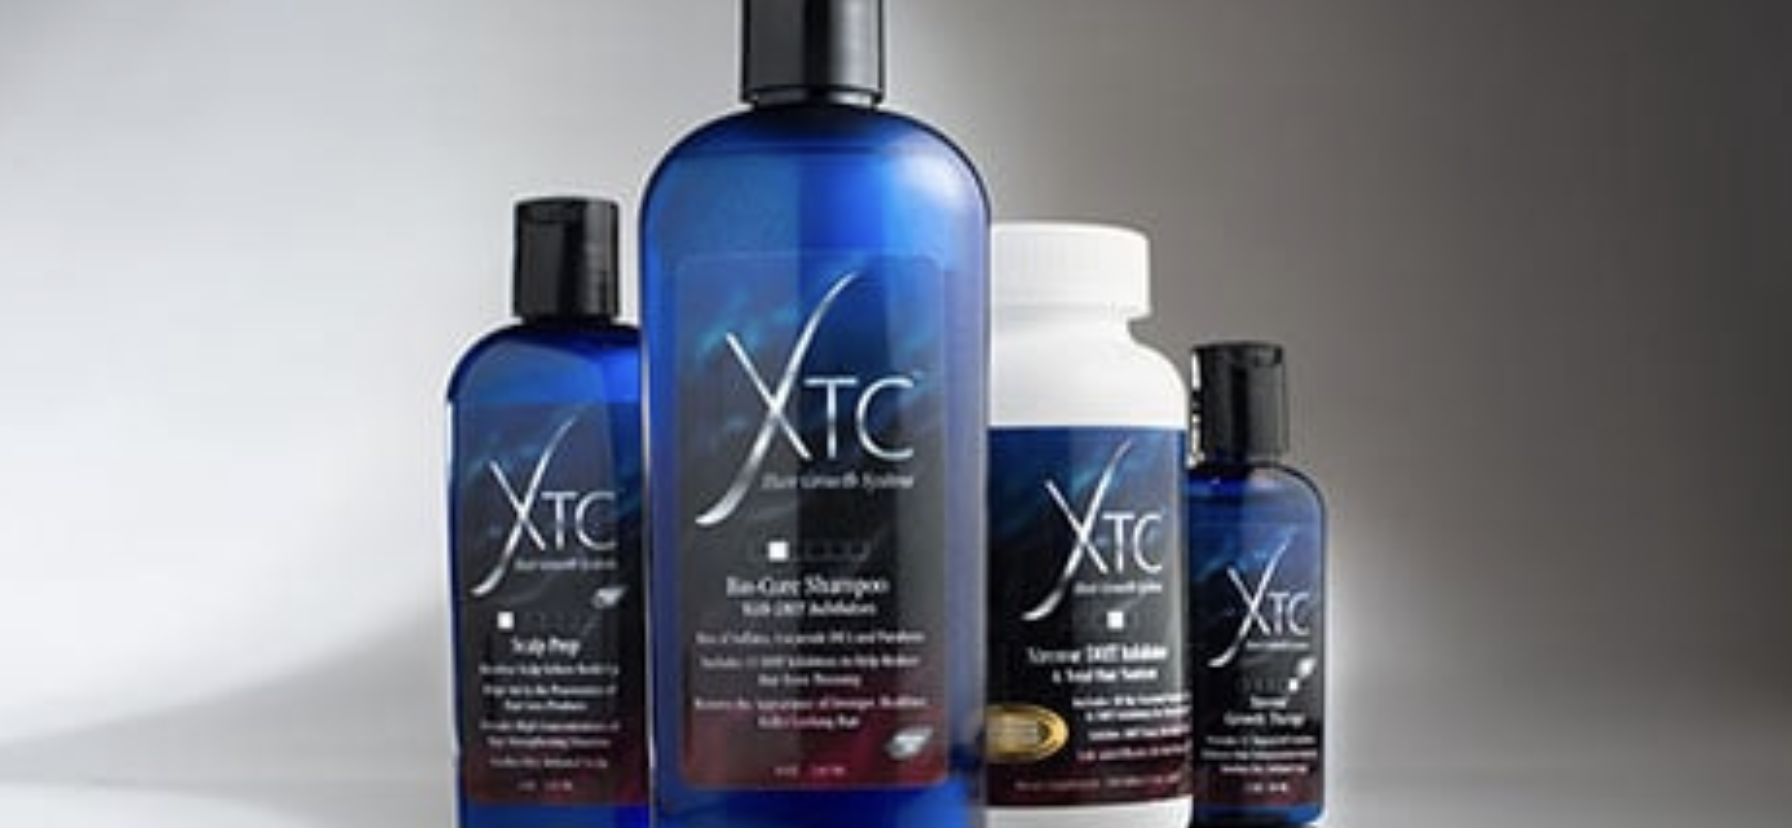 XTC Hair Growth Systems Photo